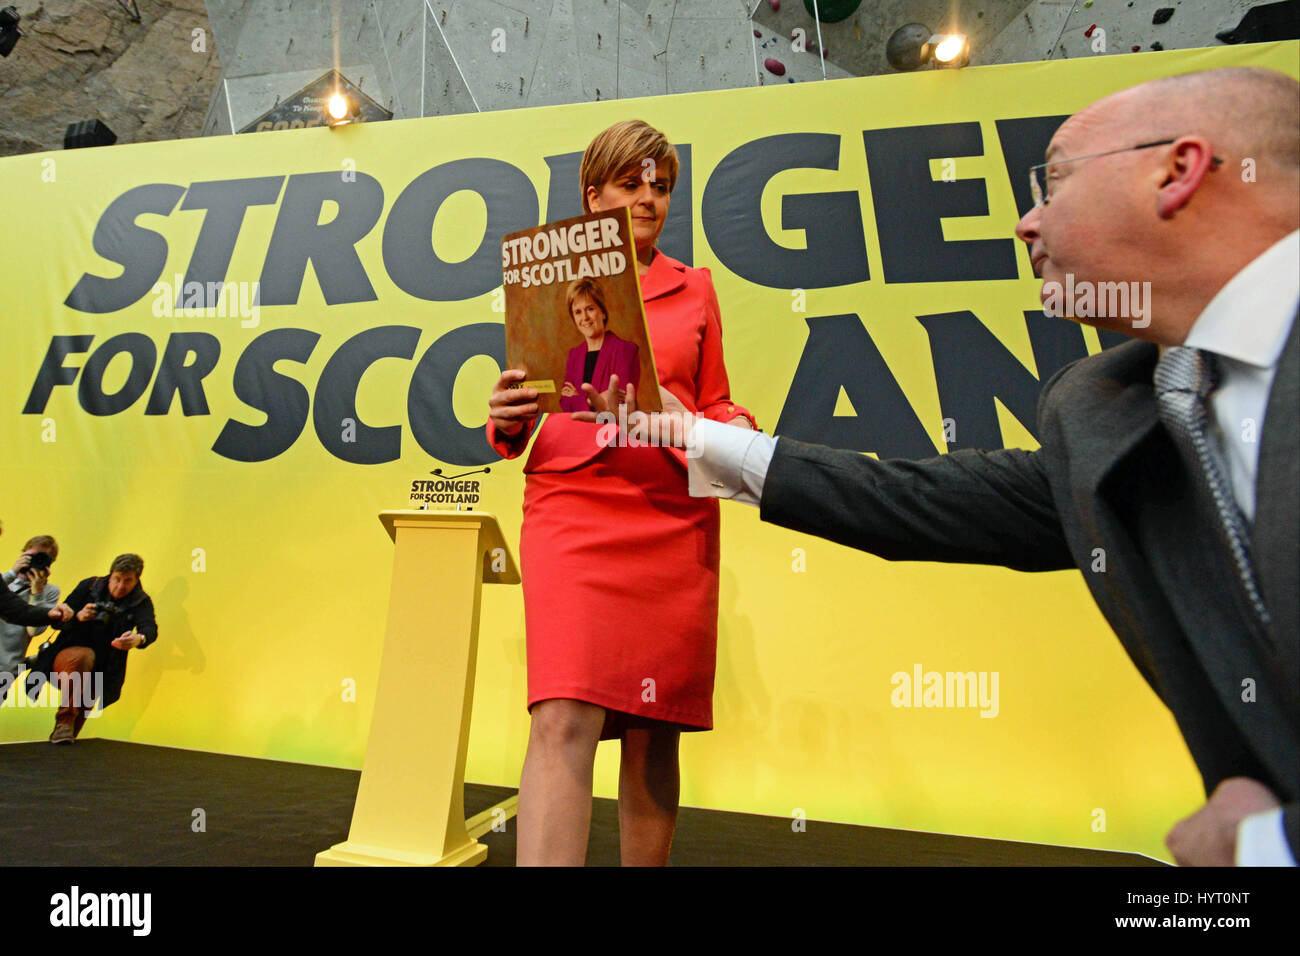 Leader du SNP et Premier ministre écossais Nicola Sturgeon est remis une copie de la général manifeste par son mari, SNP Directeur Peter Murrell lors d'une manifestation de lancement à Édimbourg Banque D'Images